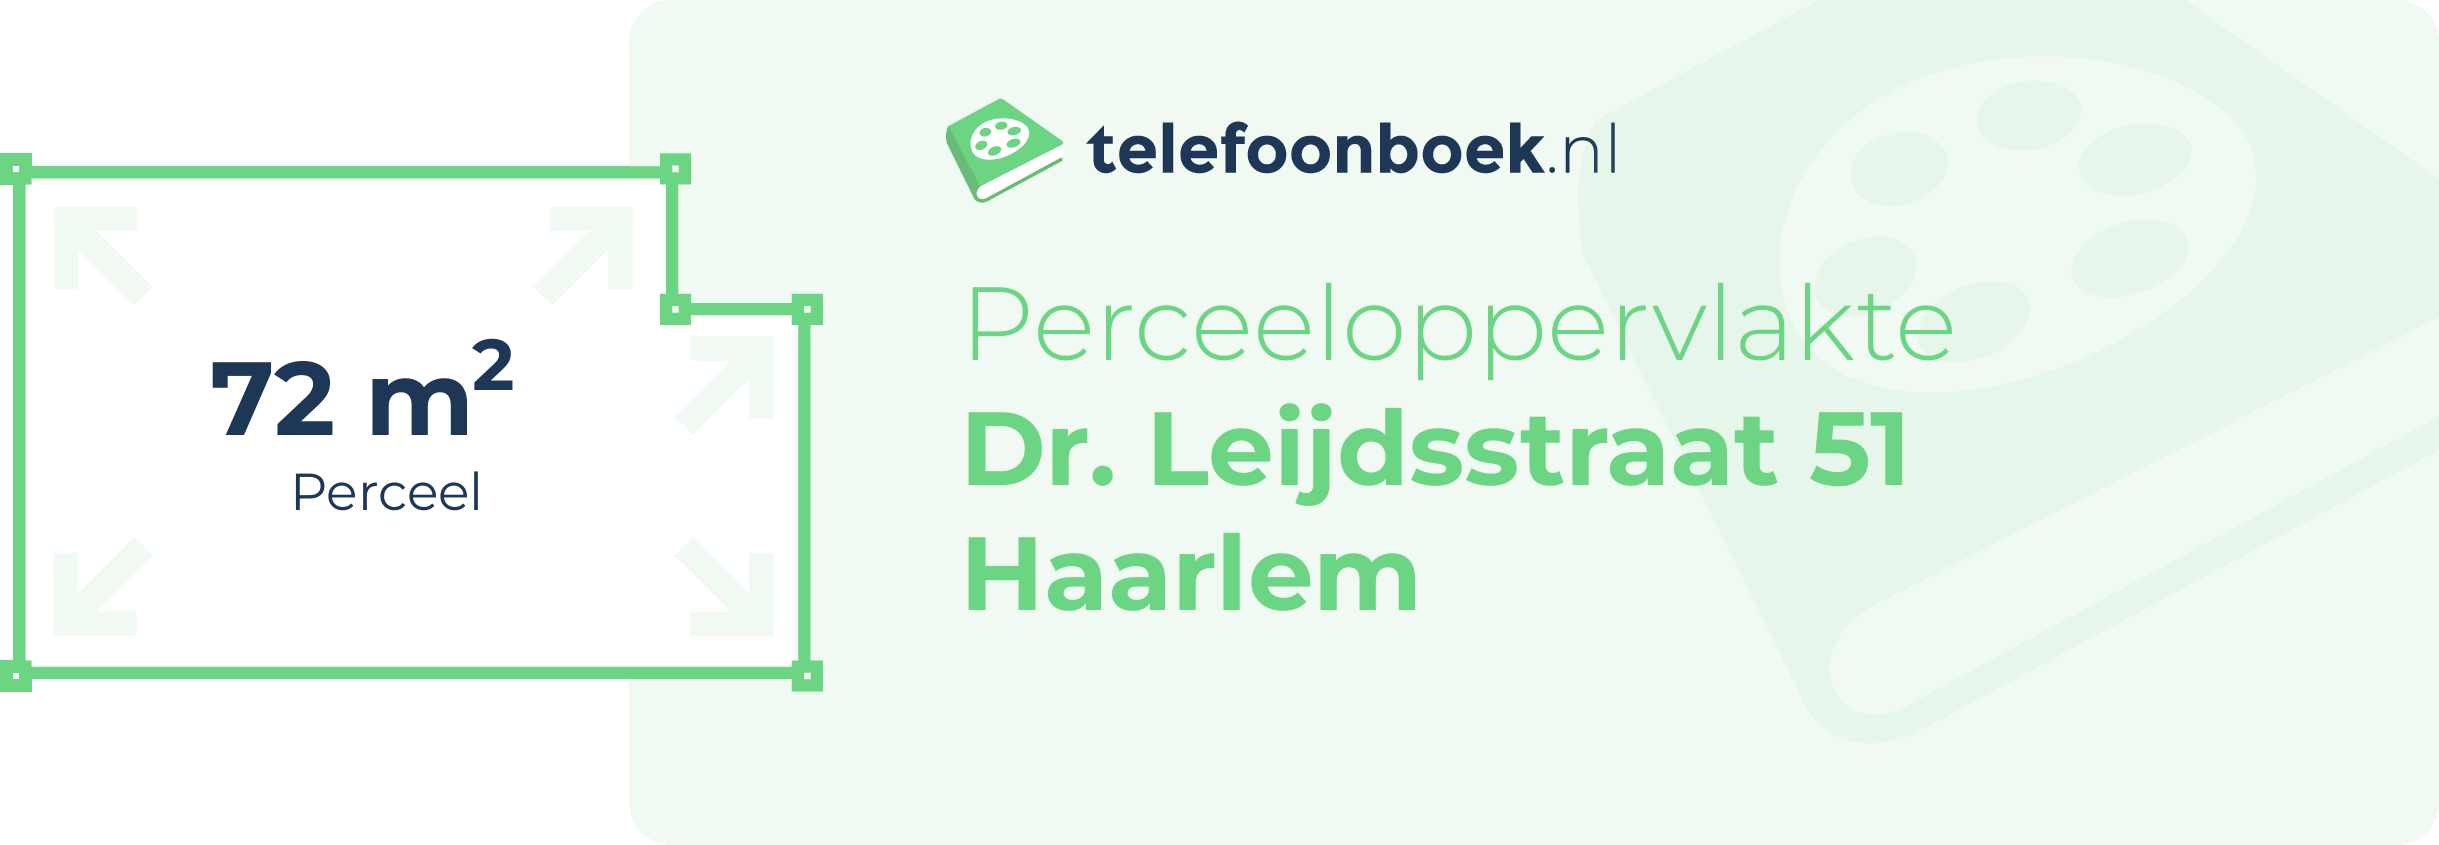 Perceeloppervlakte Dr. Leijdsstraat 51 Haarlem